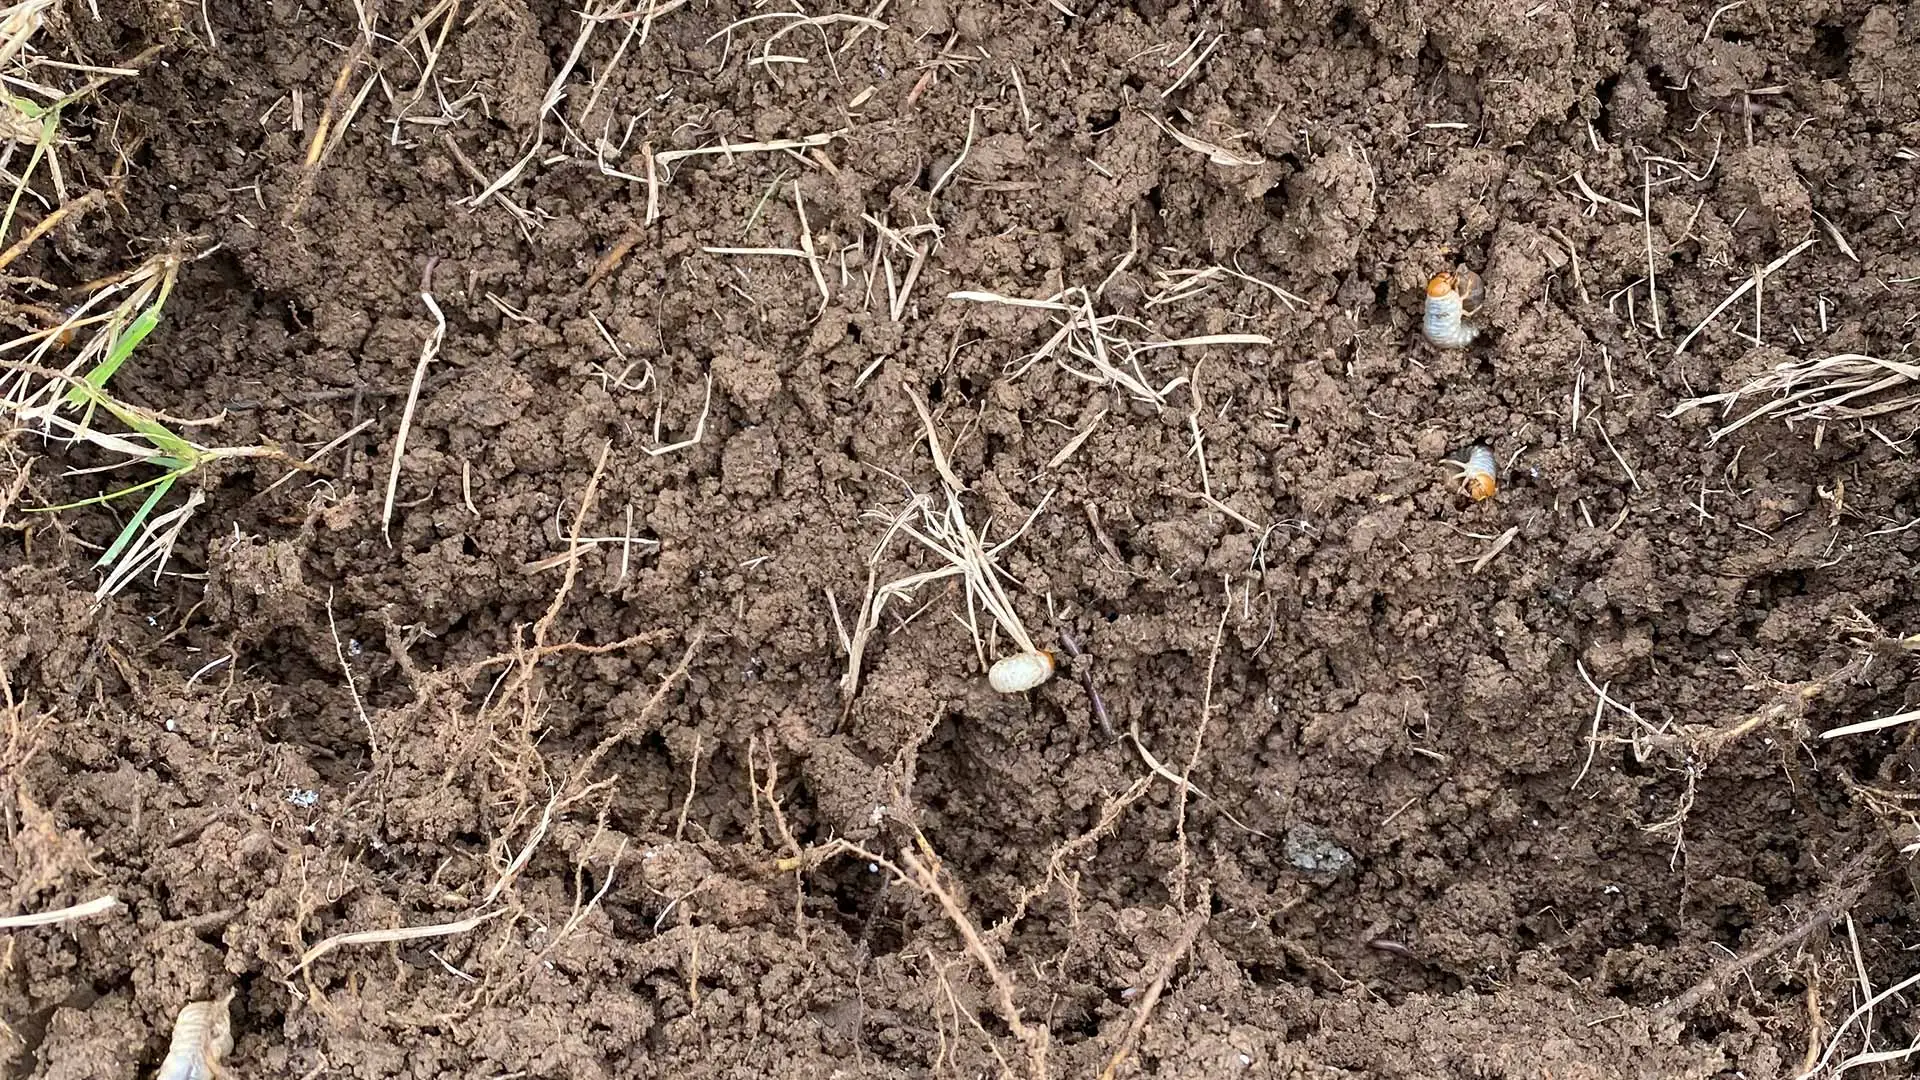 Grub worms found in lawn soil near North Little Rock, AR.